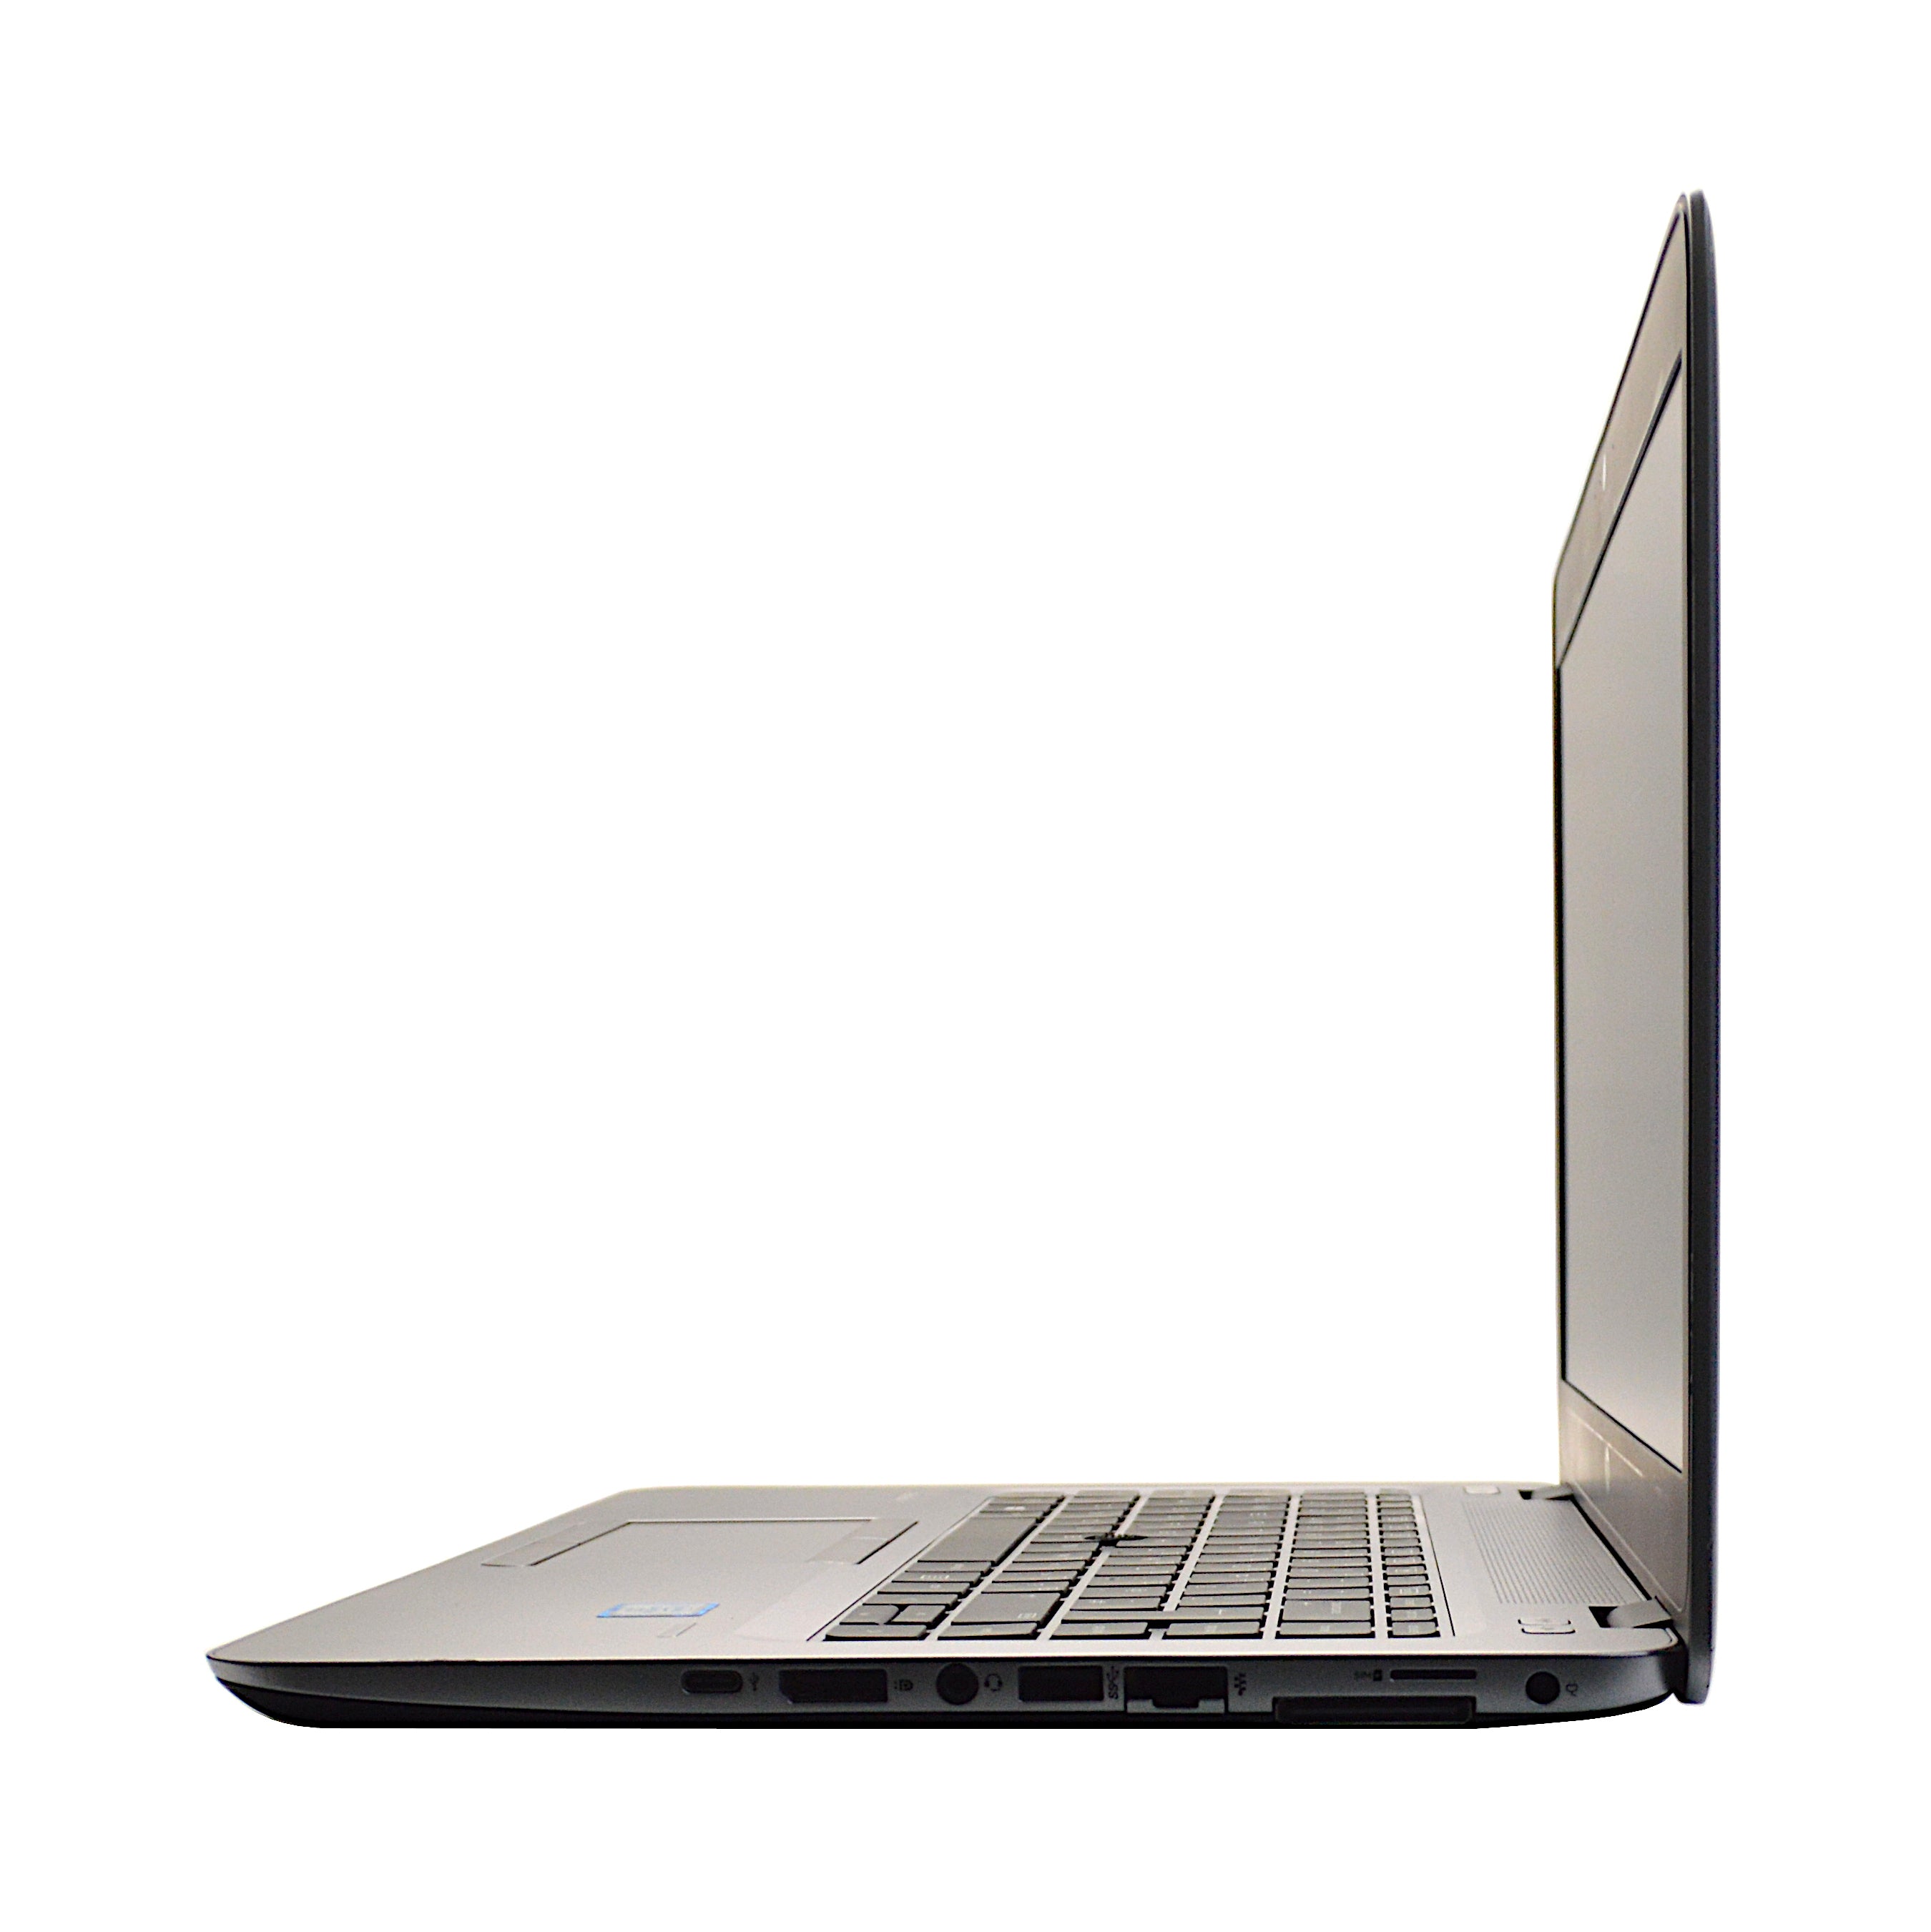 HP EliteBook 840 G3 Laptop, 14" Core i5 6th Gen, 8GB RAM, 256GB SSD